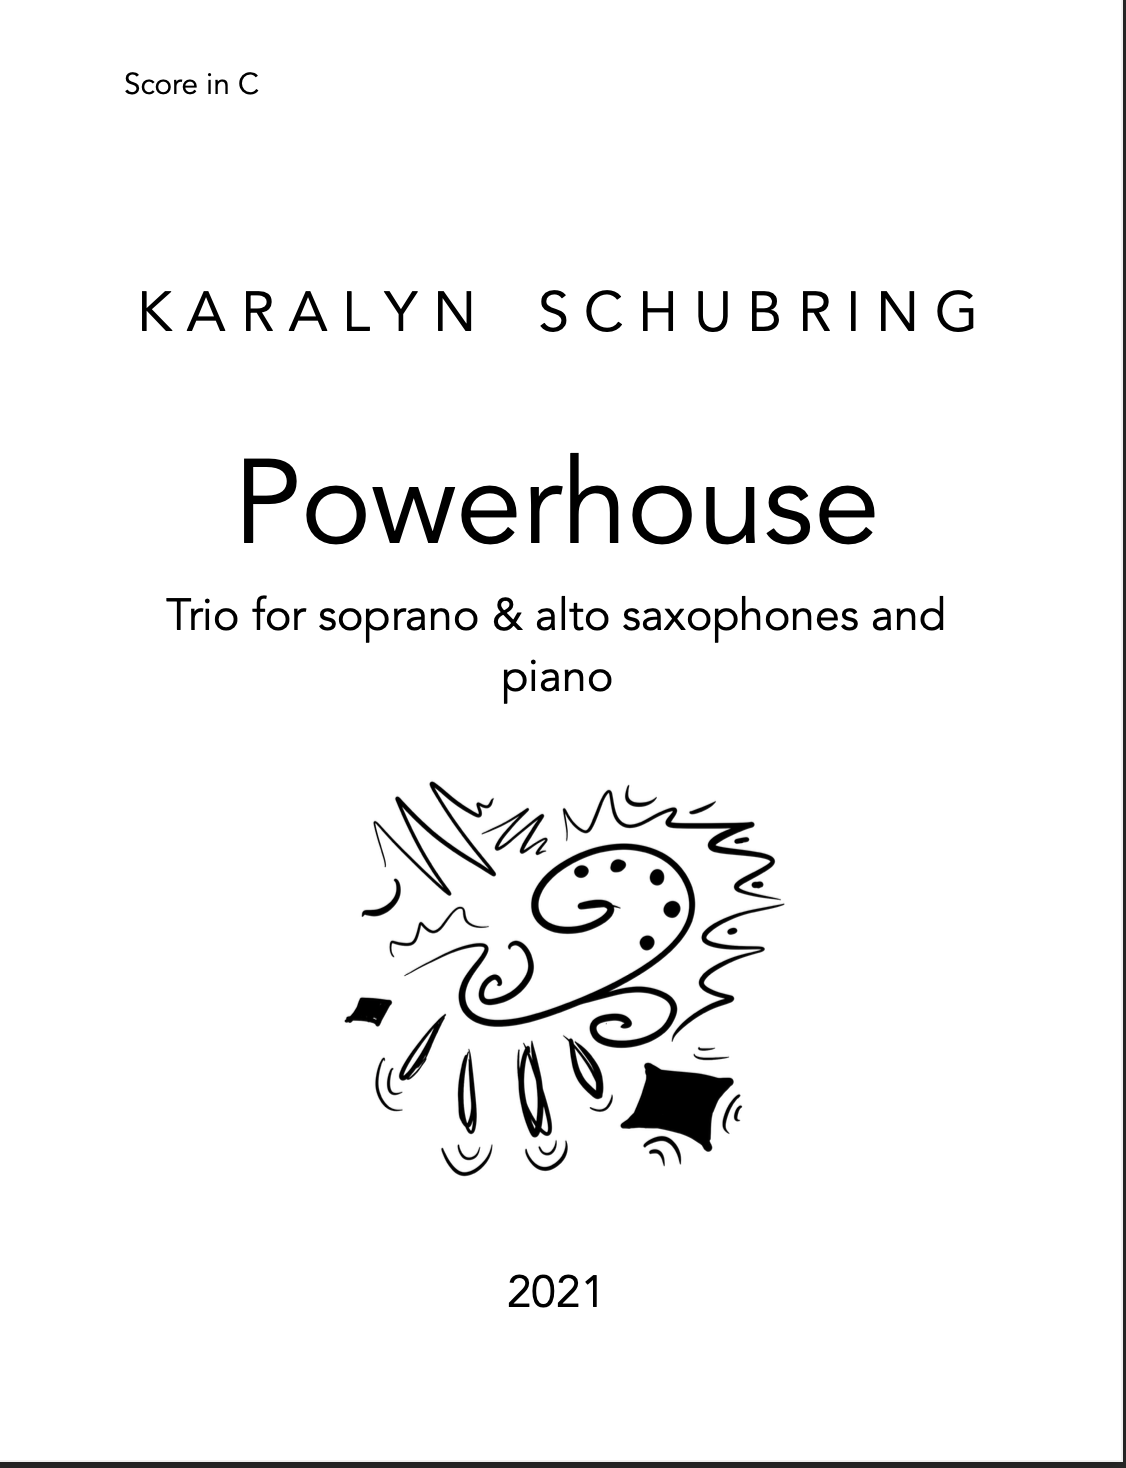 Powerhouse by Karalyn Schubring